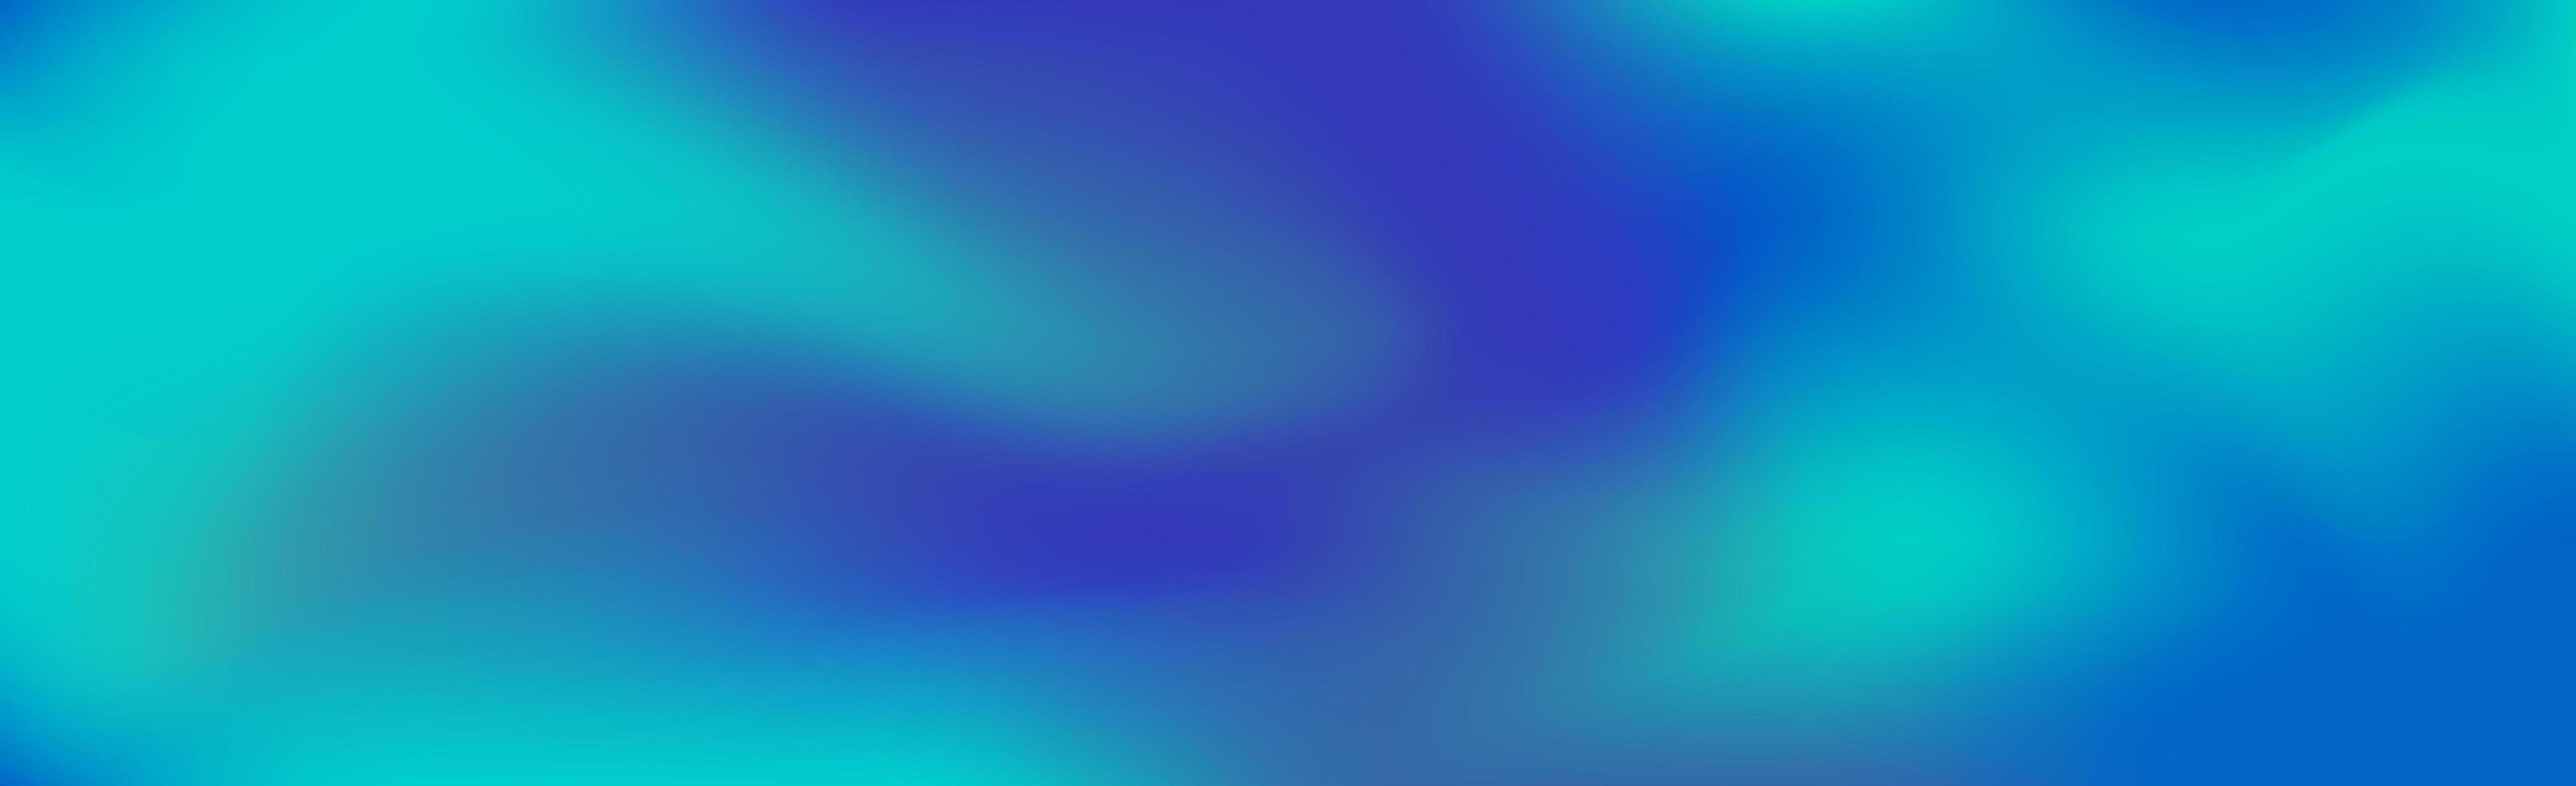 Fondo panorámico abstracto degradado azul oscuro - vector